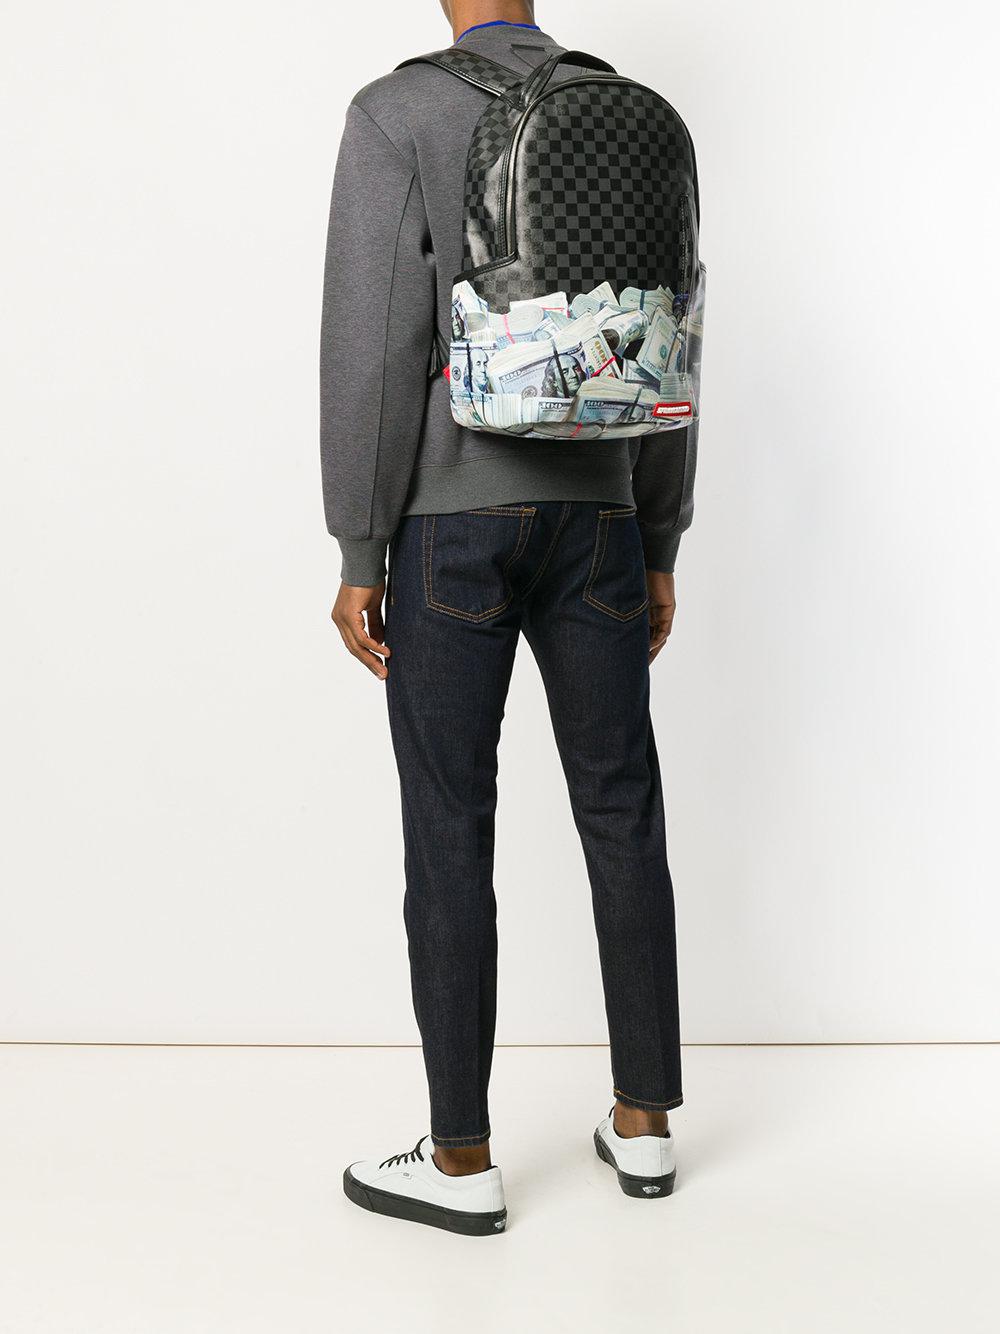 Sprayground Money Print Backpack in Black for Men